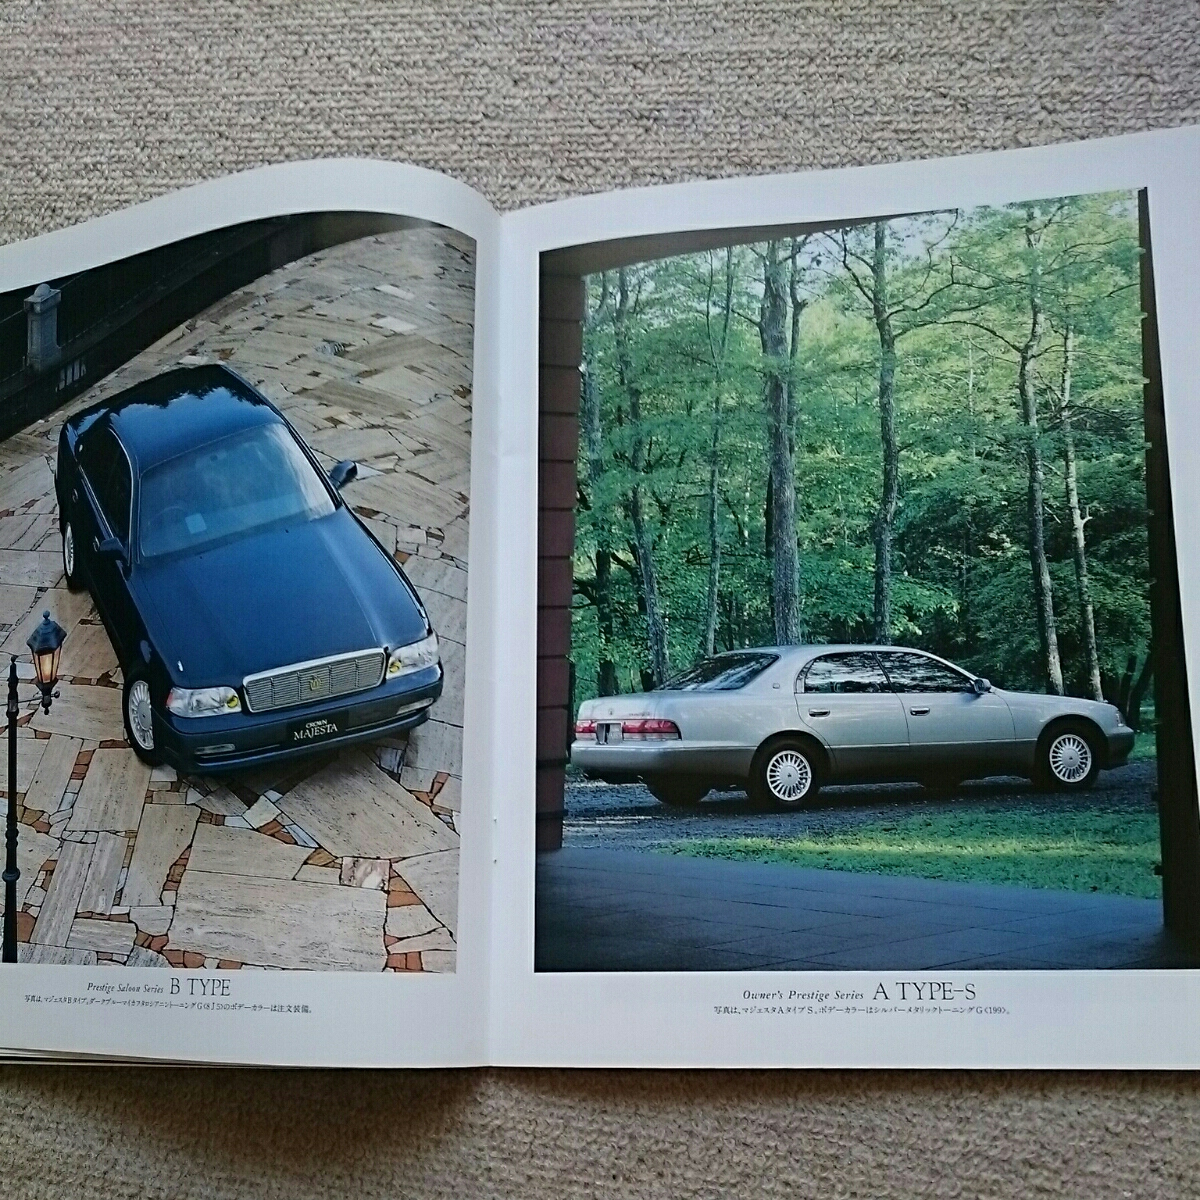  распроданный,1993 год 8 месяц выпуск, Toyota Crown Majesta.UZS141,4000 V8,3000 распорка 6 основной каталог.